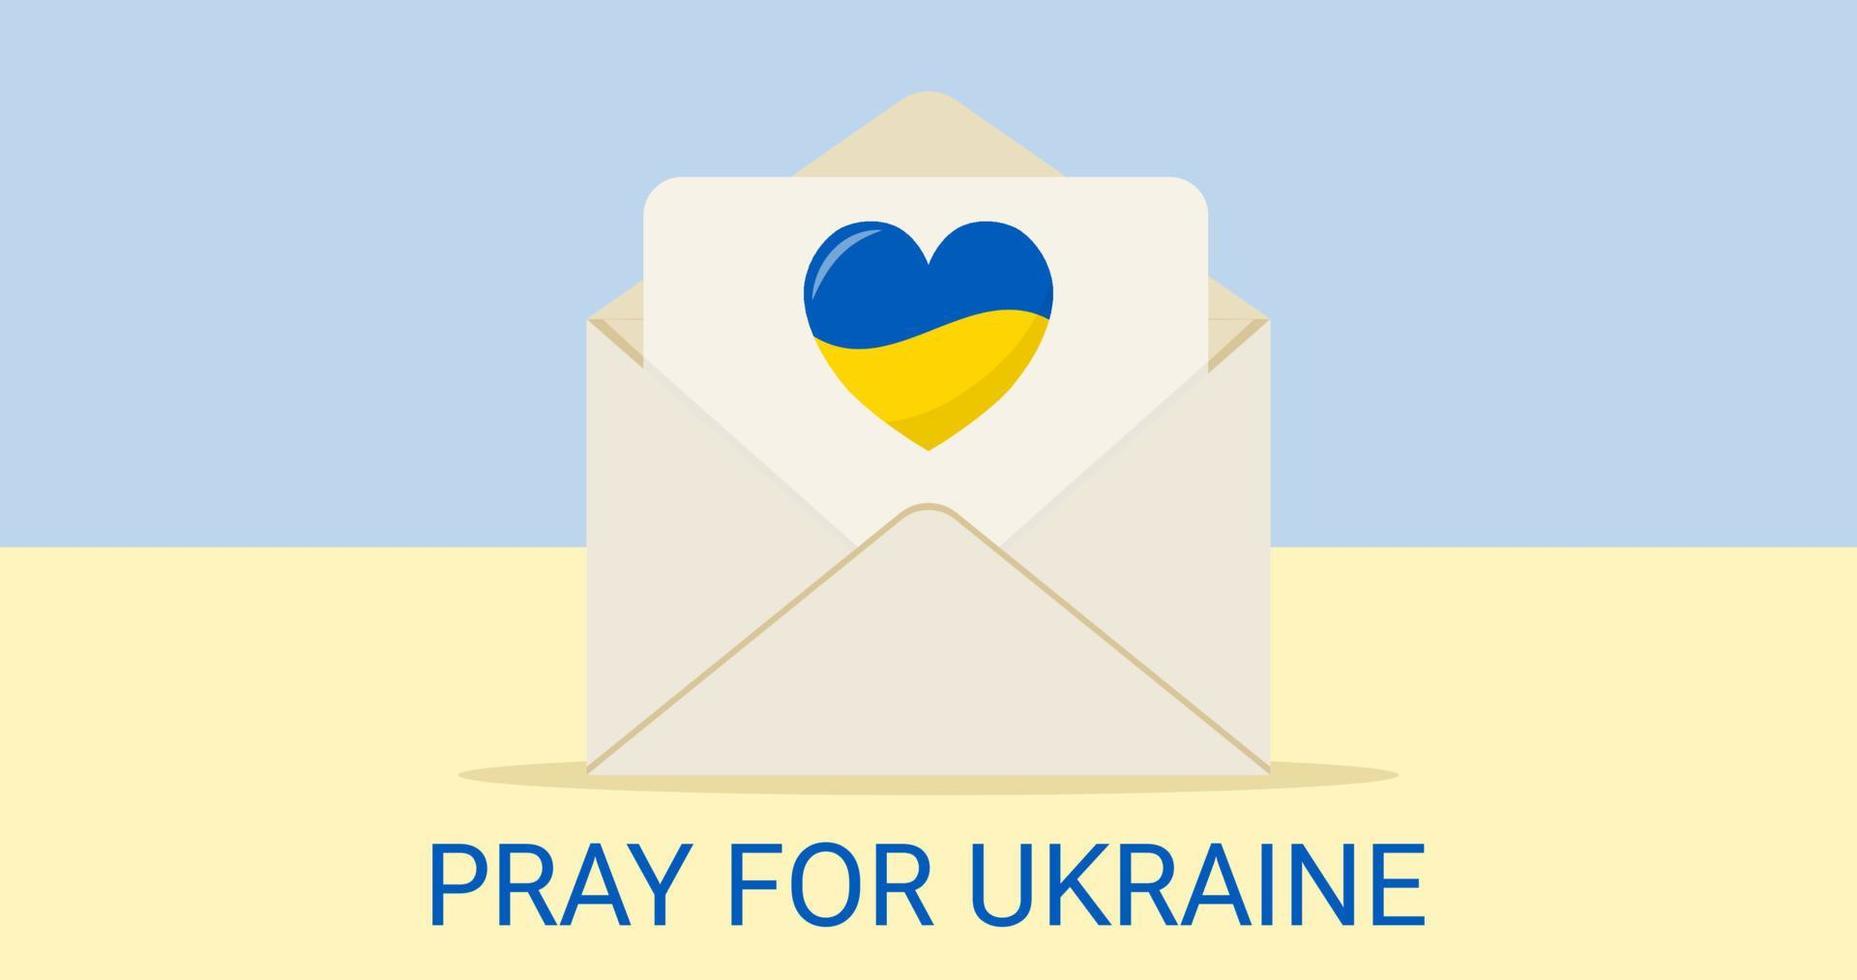 sostieni l'ucraina, prega per l'ucraina, busta con cuore, colori della bandiera ucraina. concetto di donazione e volontariato. illustrazione vettoriale